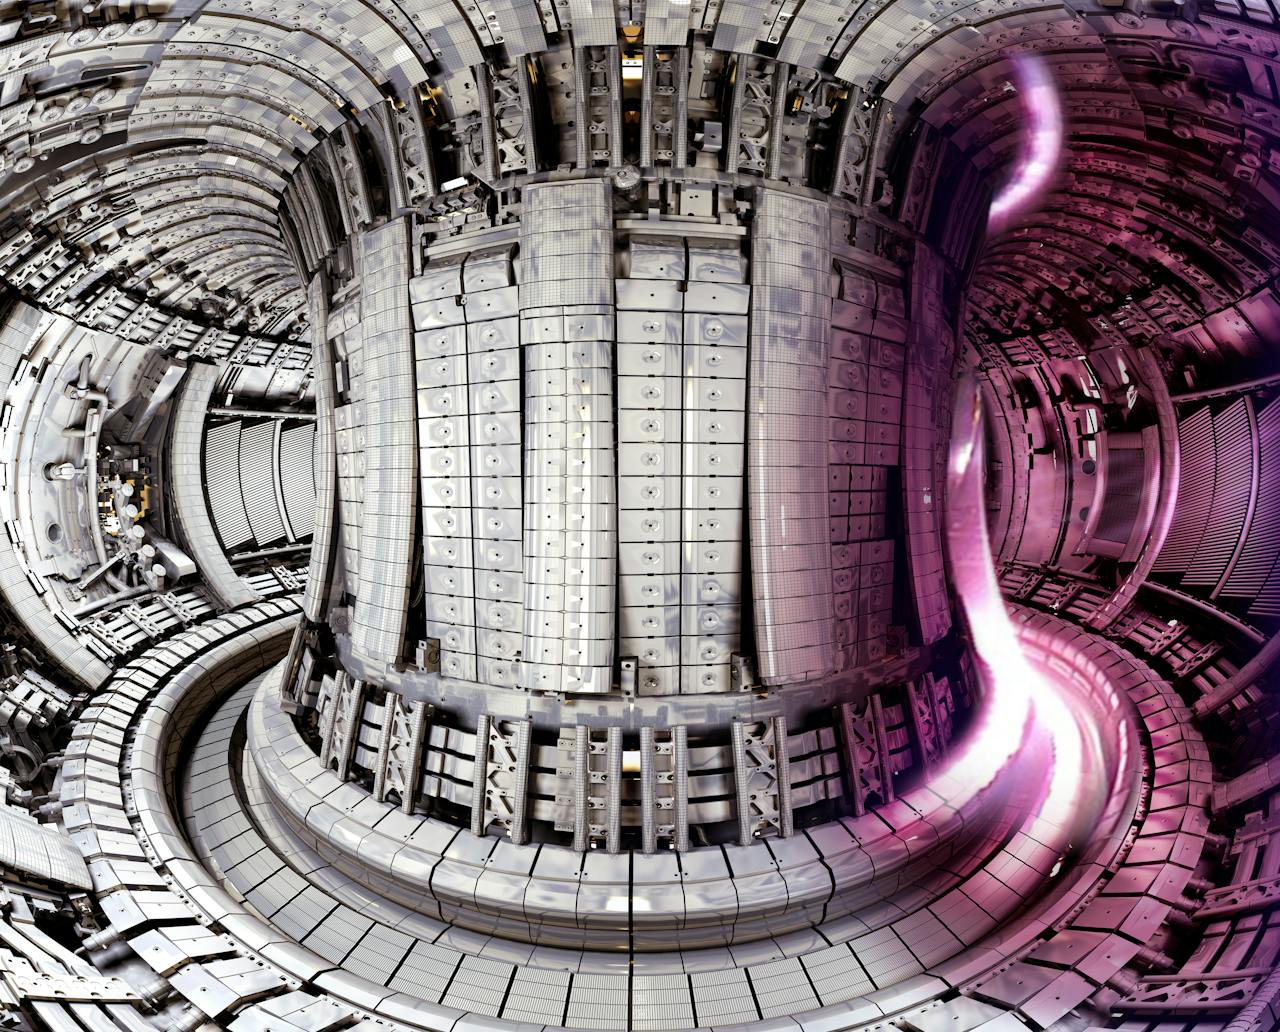 Interieur van de Franse kernreactor ITER. Het is de eerste kernfusiereactor die meer energie oplevert dan nodig is om het fusieplasma te verhitten en te controleren.